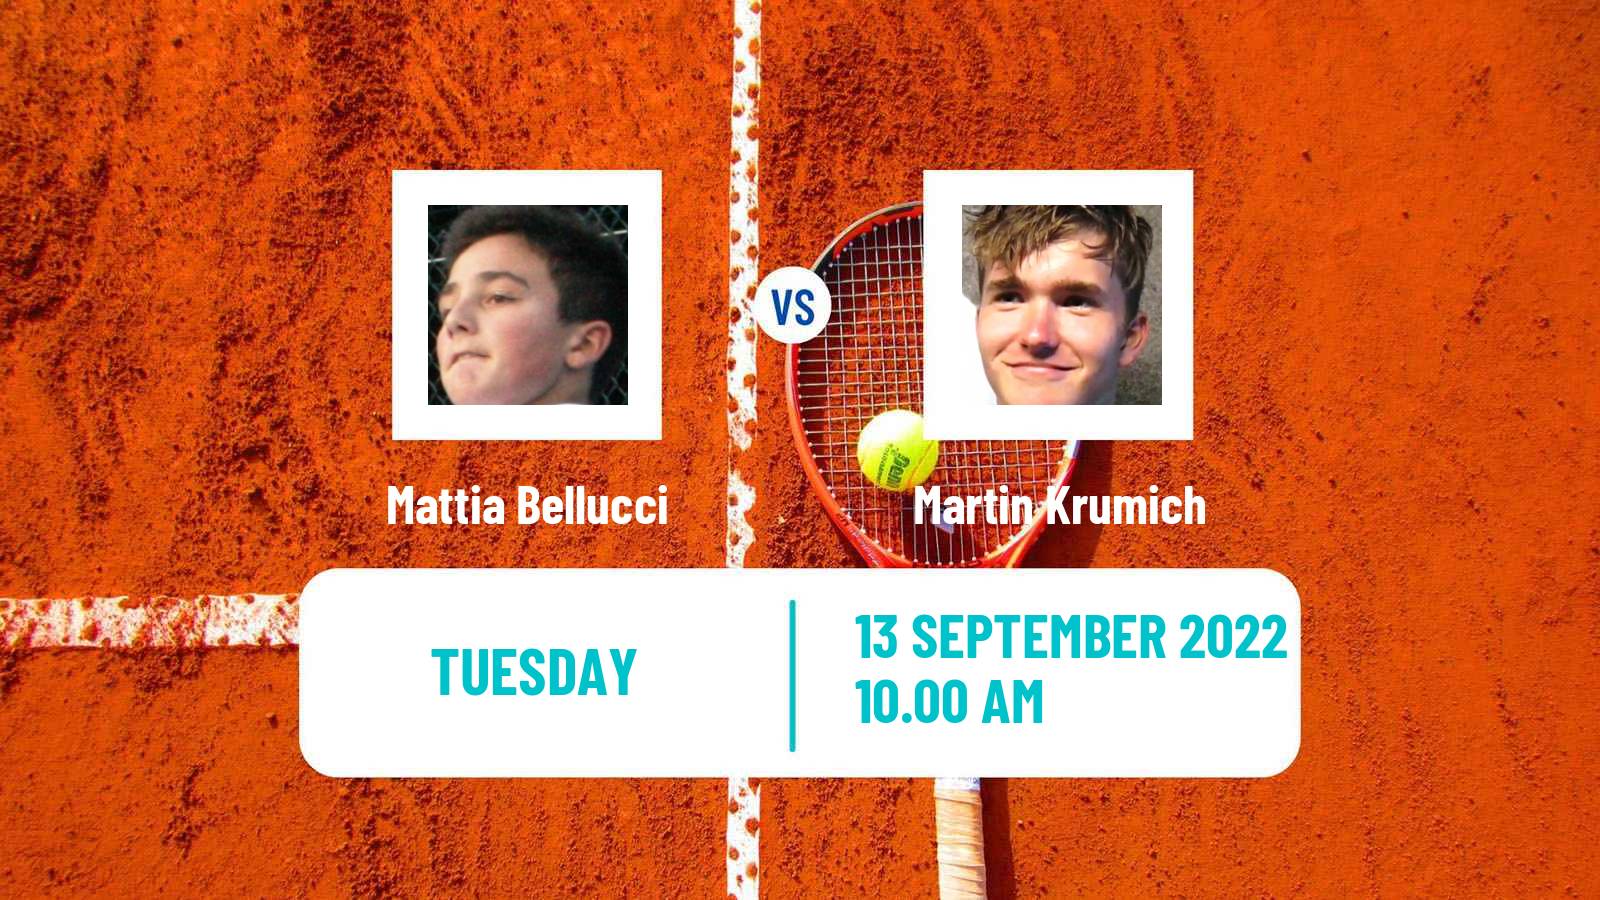 Tennis ATP Challenger Mattia Bellucci - Martin Krumich